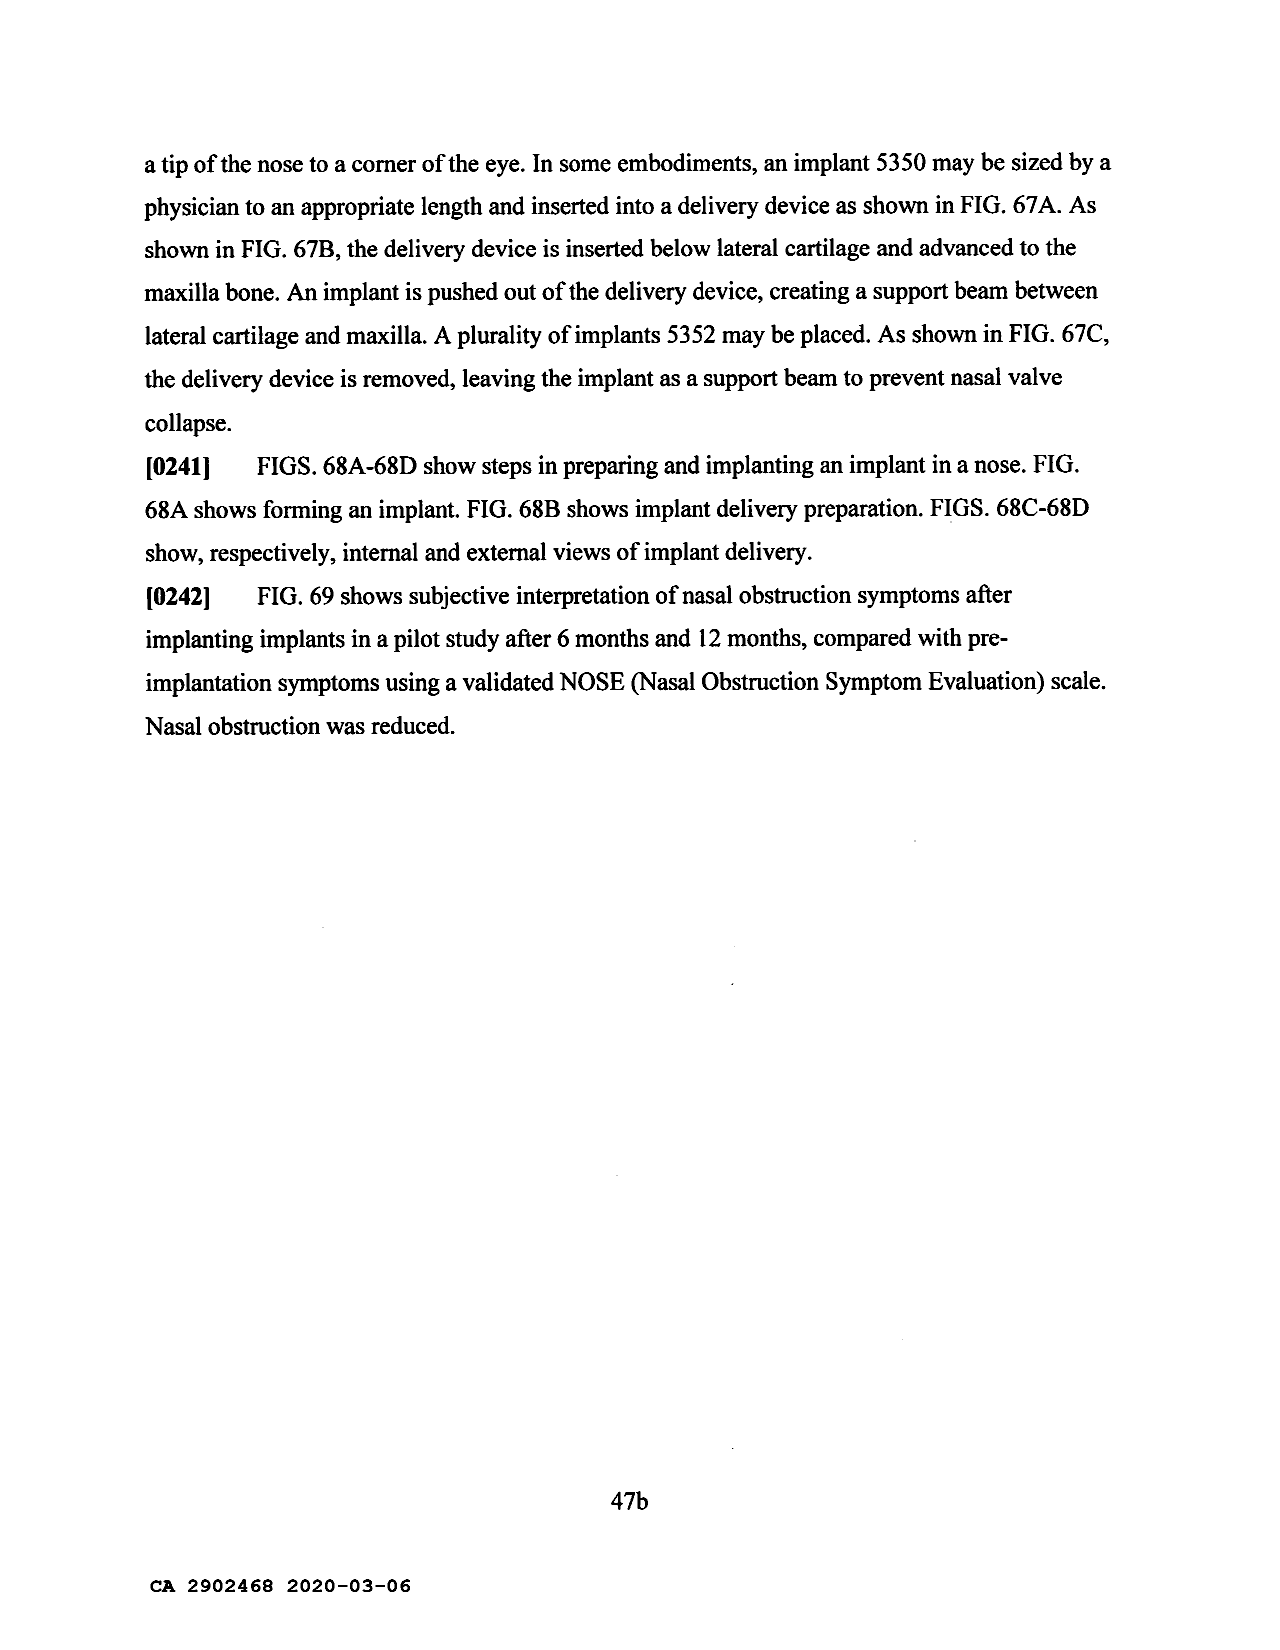 Canadian Patent Document 2902468. Description 20200306. Image 56 of 56